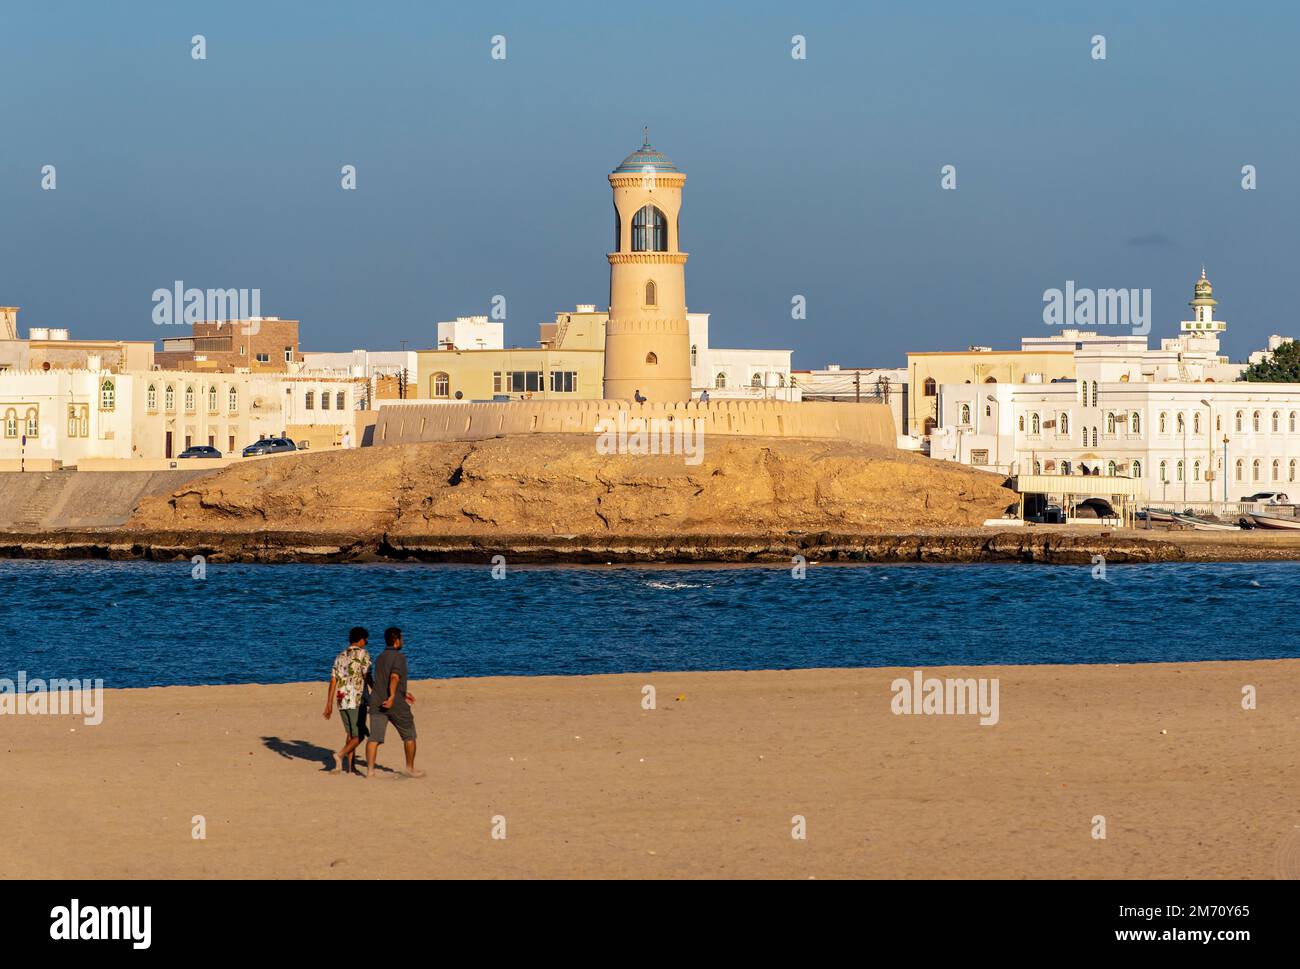 Deux hommes marchent sur la plage de sur avec le phare d'Al-Ayjah en arrière-plan, Oman Banque D'Images